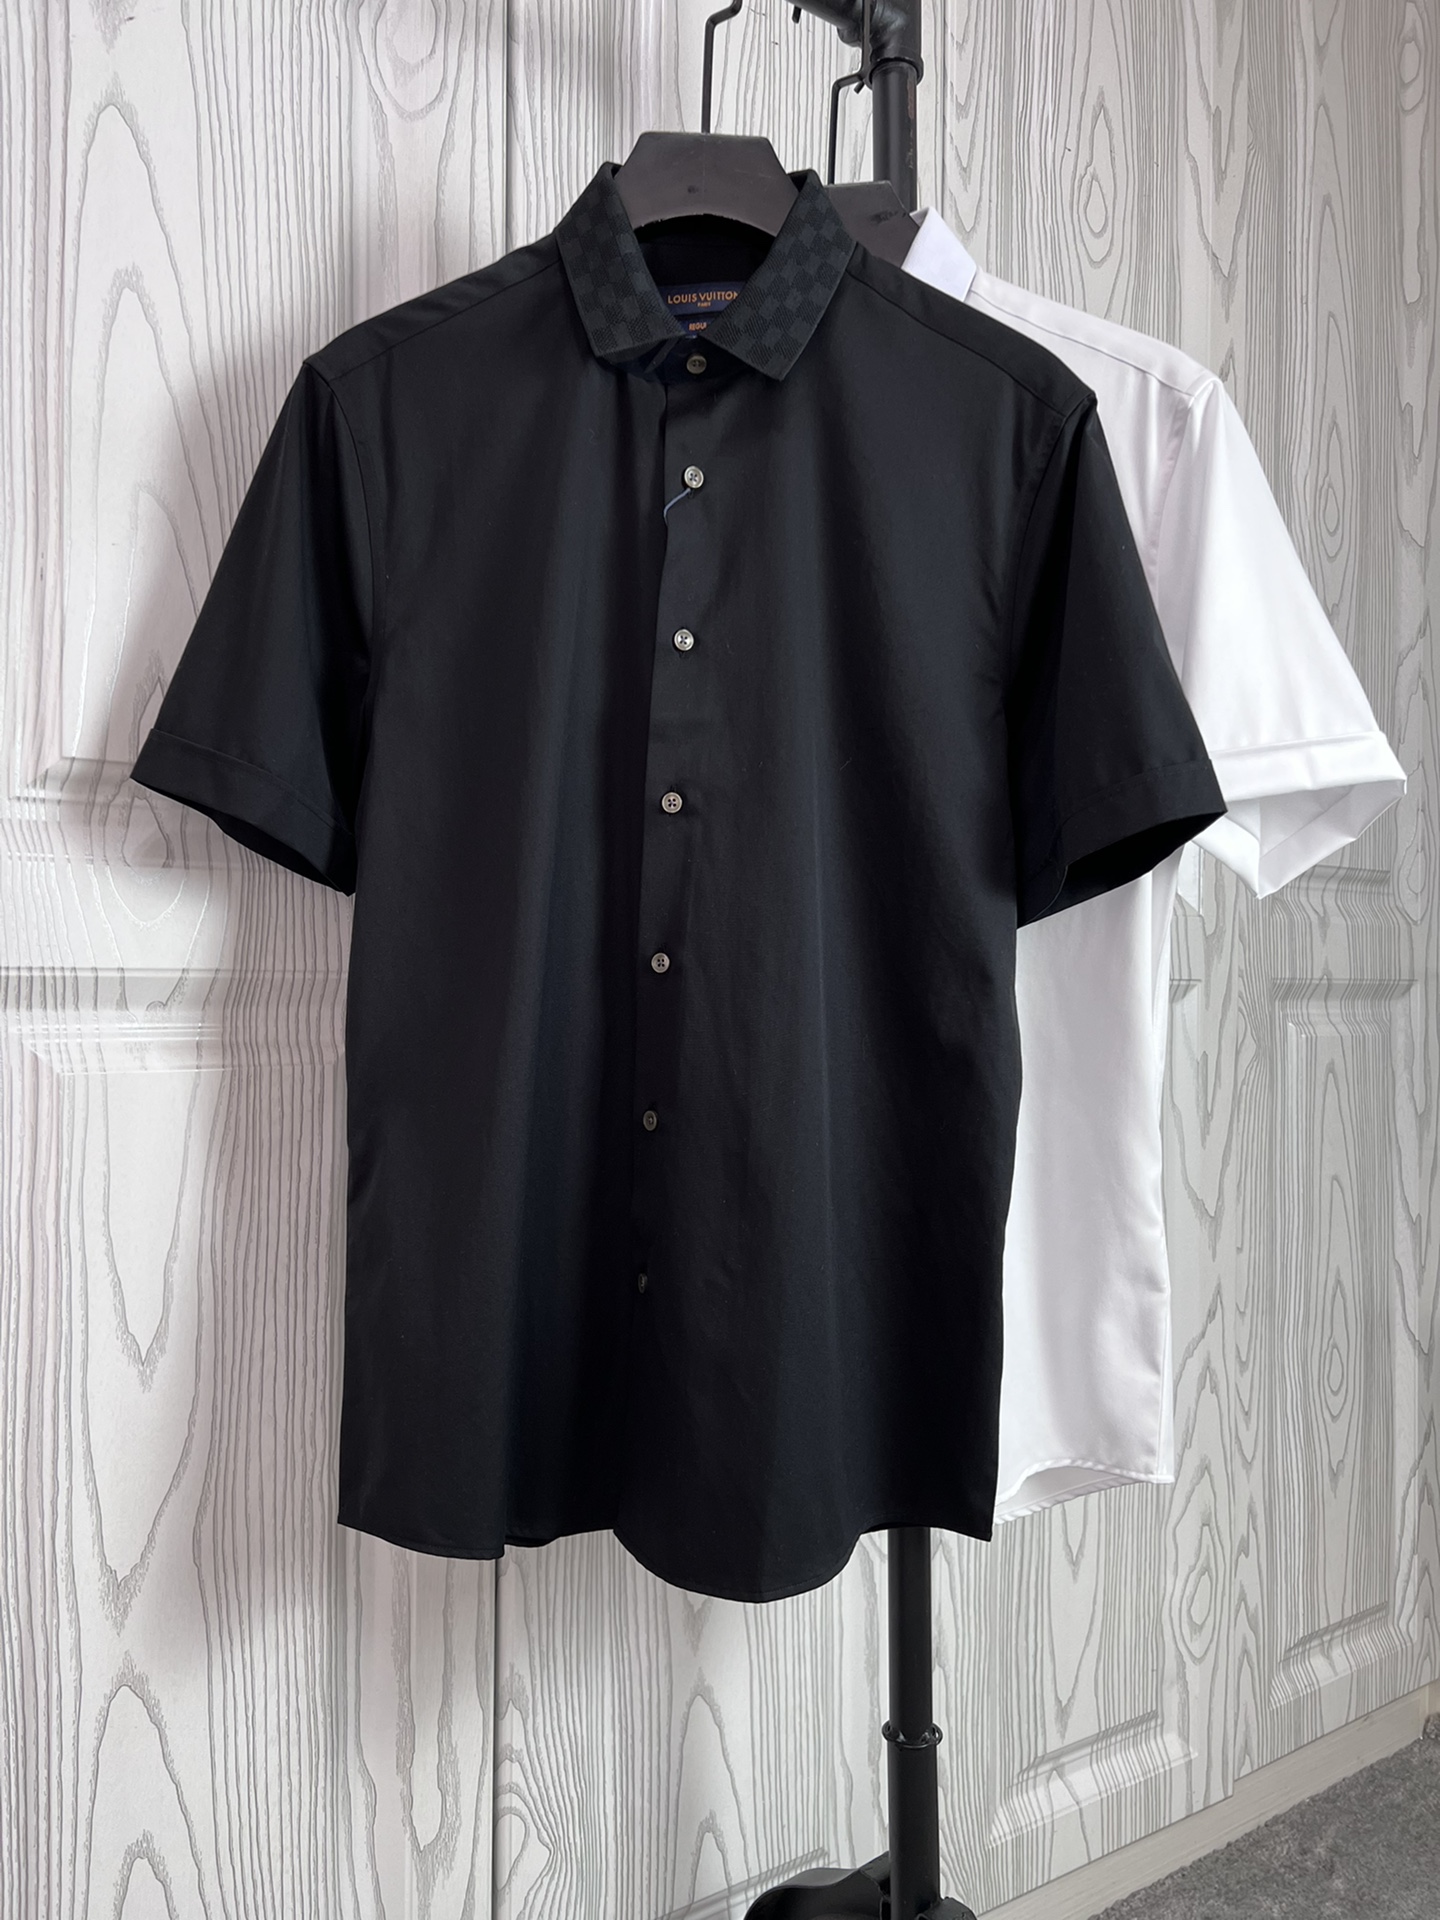 驴家24春夏新款短袖衬衫 针织方格拼接领设计 高端系列 黑色 白色 S,M,L,XL,XXL